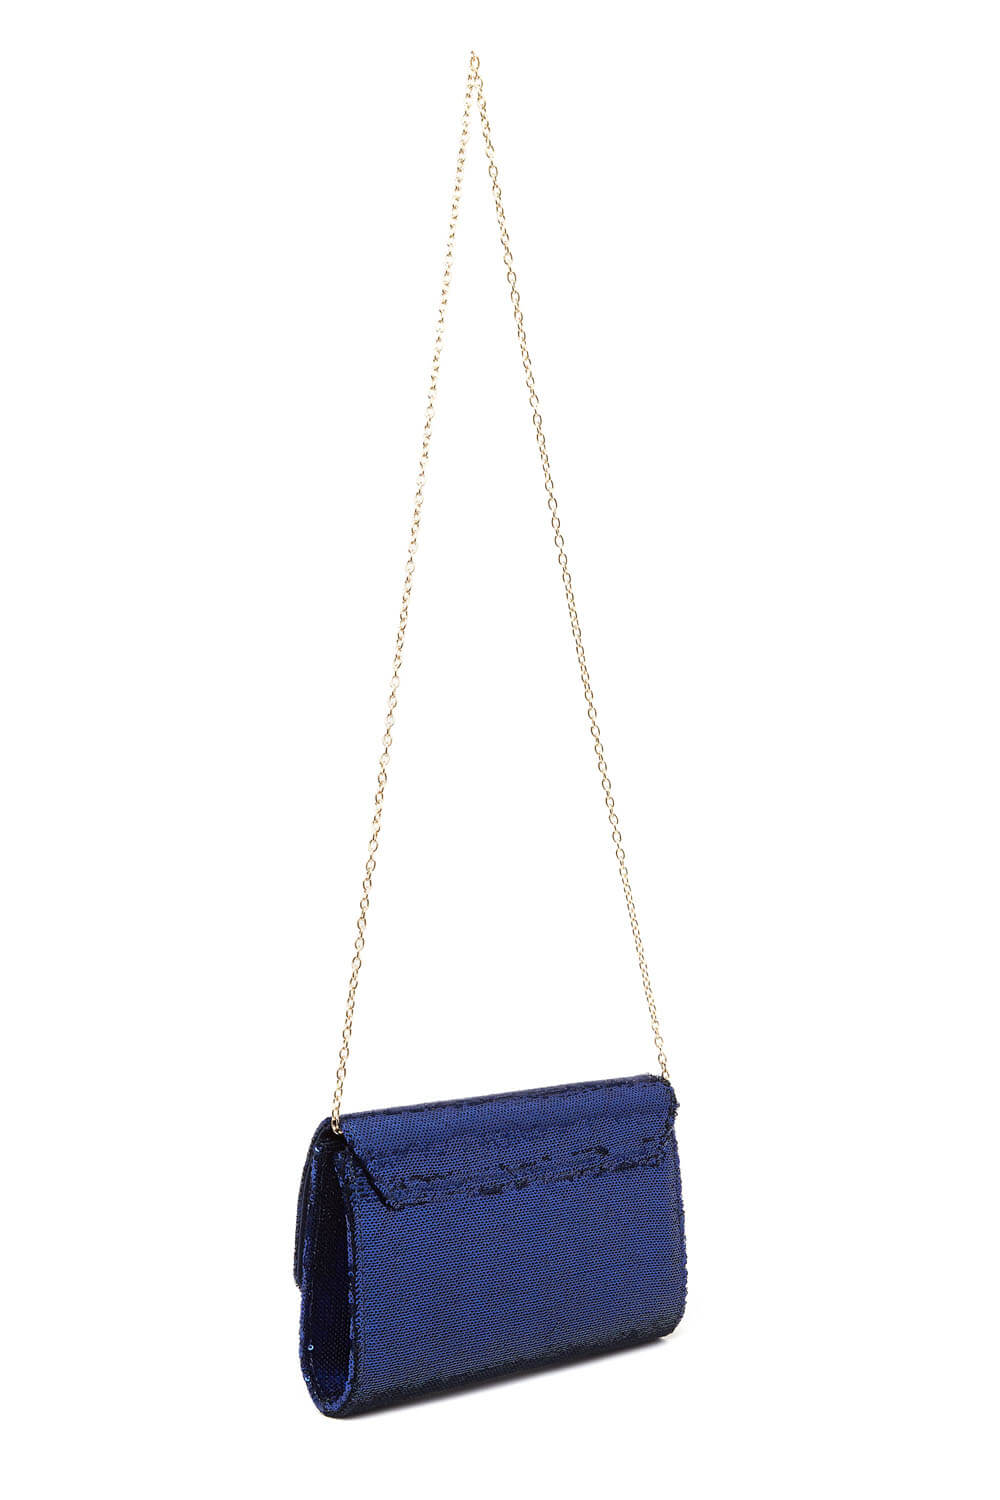 Blue Sequin Foldover Metal Bar Clutch Bag, Image 4 of 5